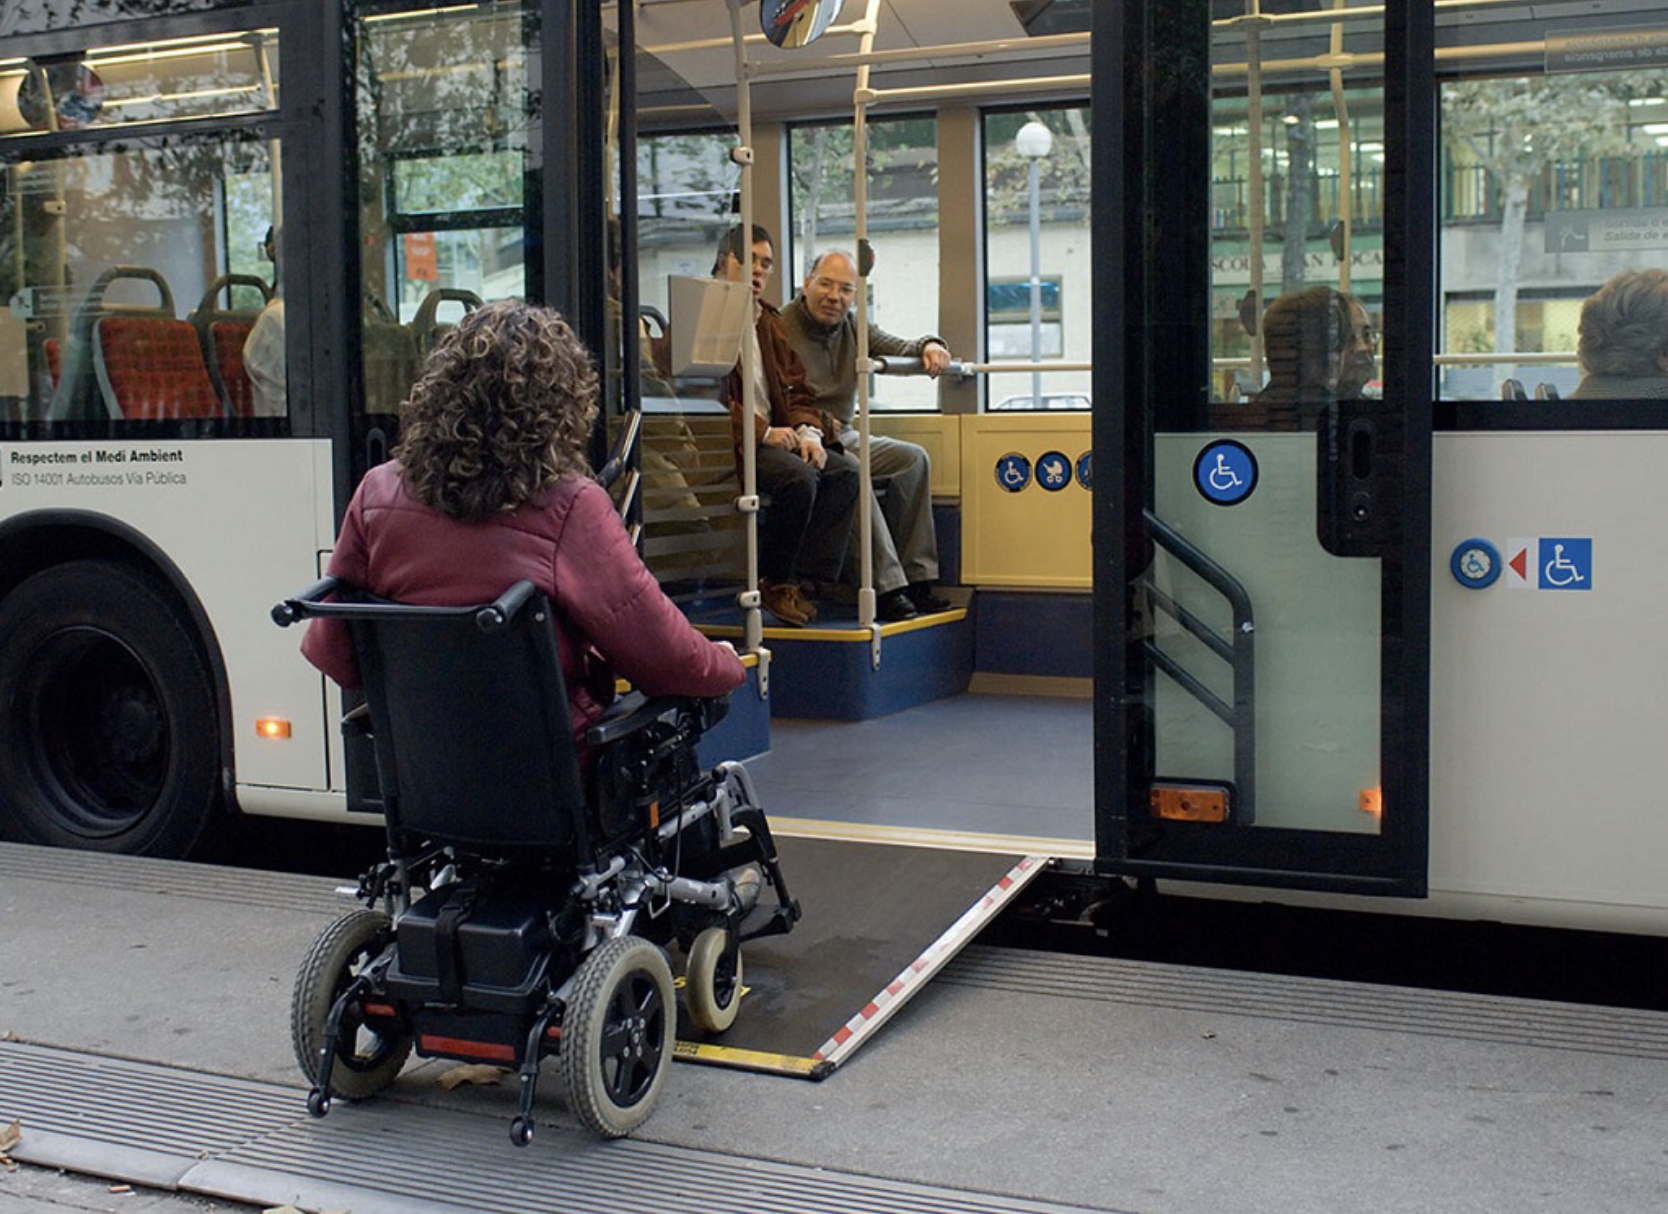 Перевозка пассажиров инвалидов. Общественный транспорт для инвалидов. Автобус для инвалидов. Транспорт для маломобильных людей. Транспорт для людей с ограниченными возможностями.